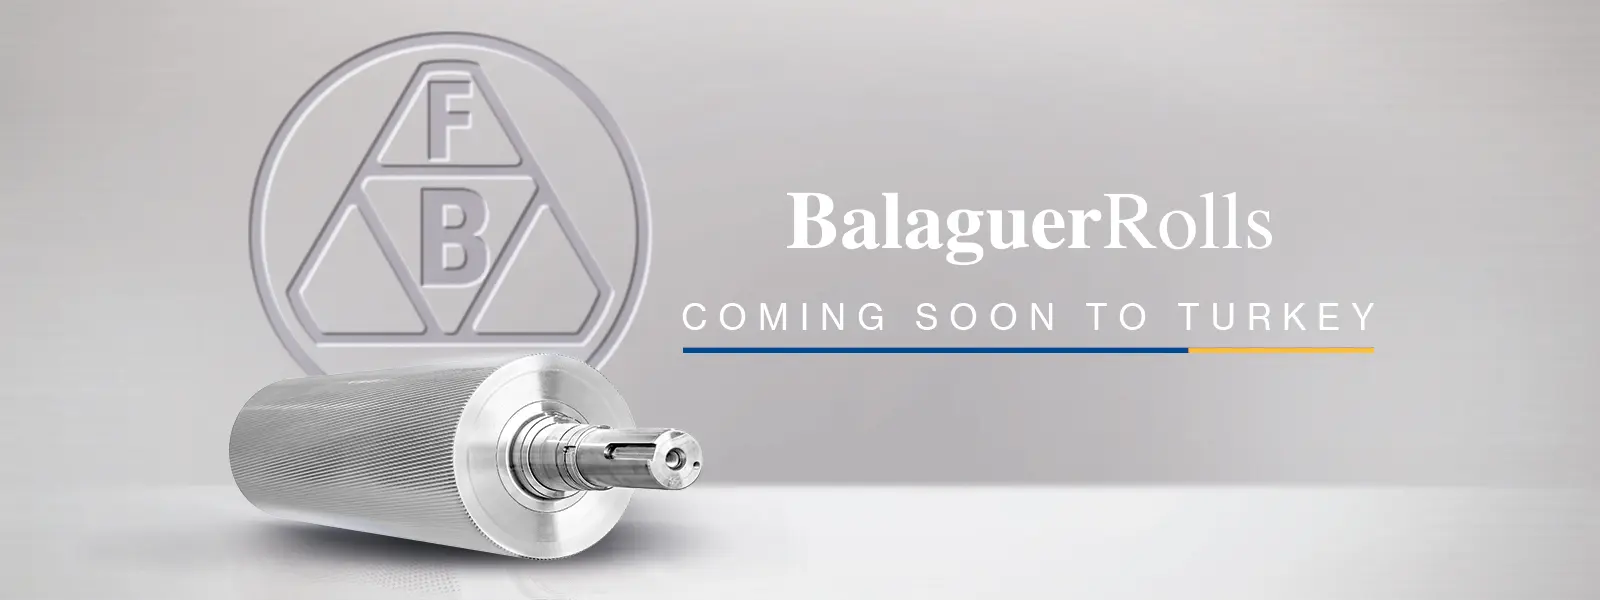 Balaguer Rolls estará pronto en Turquía